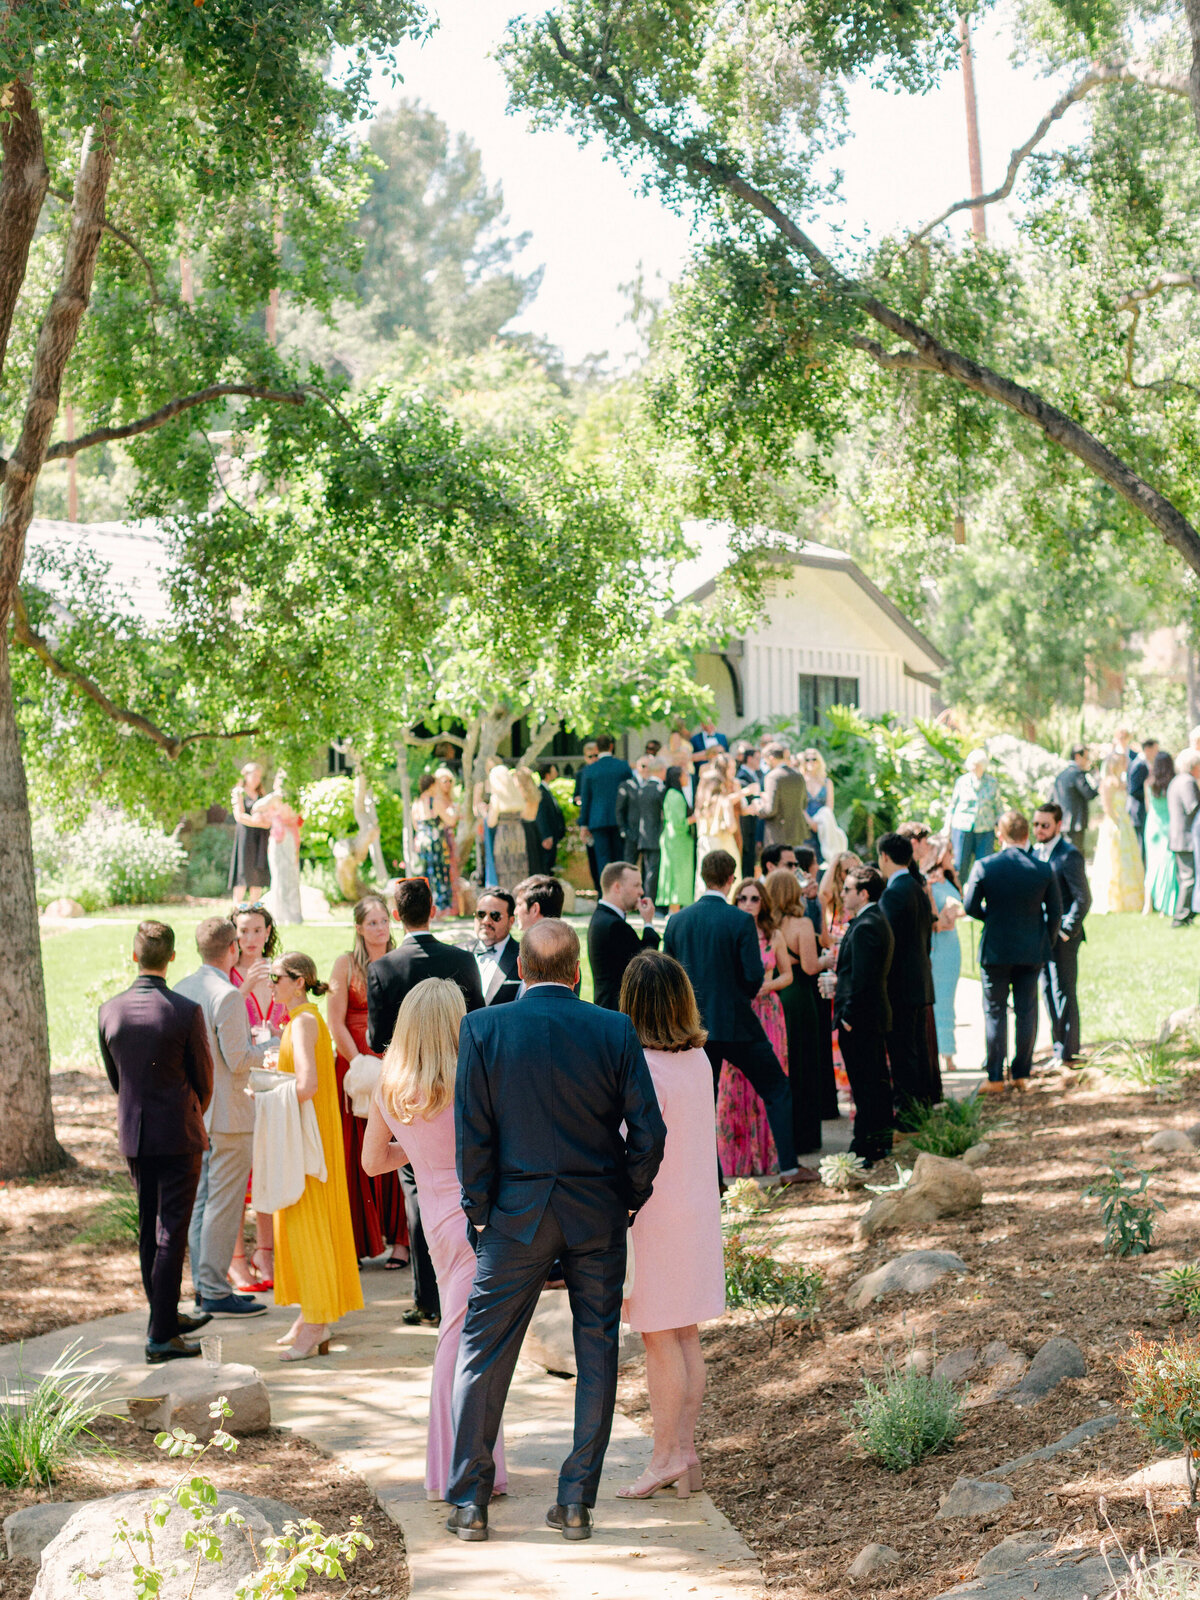 Private Estate Wedding in Ojai, California - 70